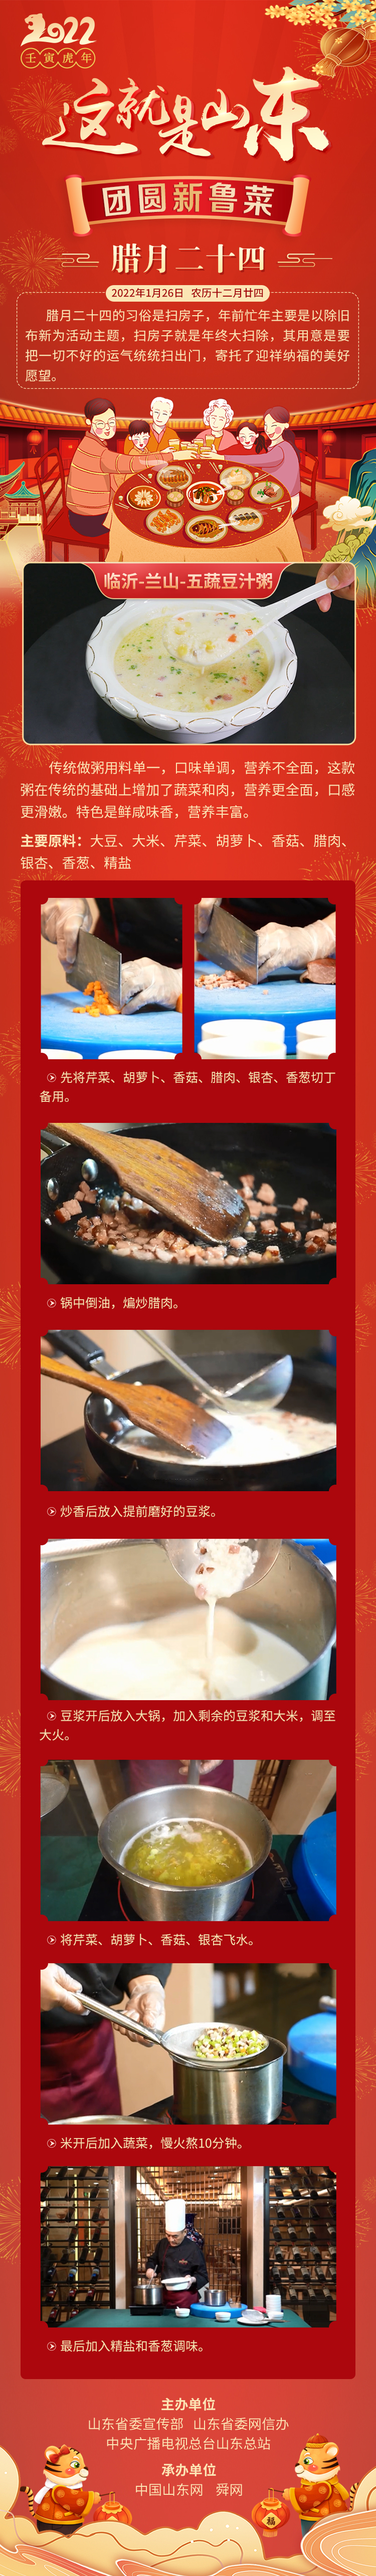 这就是山东·团圆新鲁菜——临沂-兰山-五蔬豆汁粥